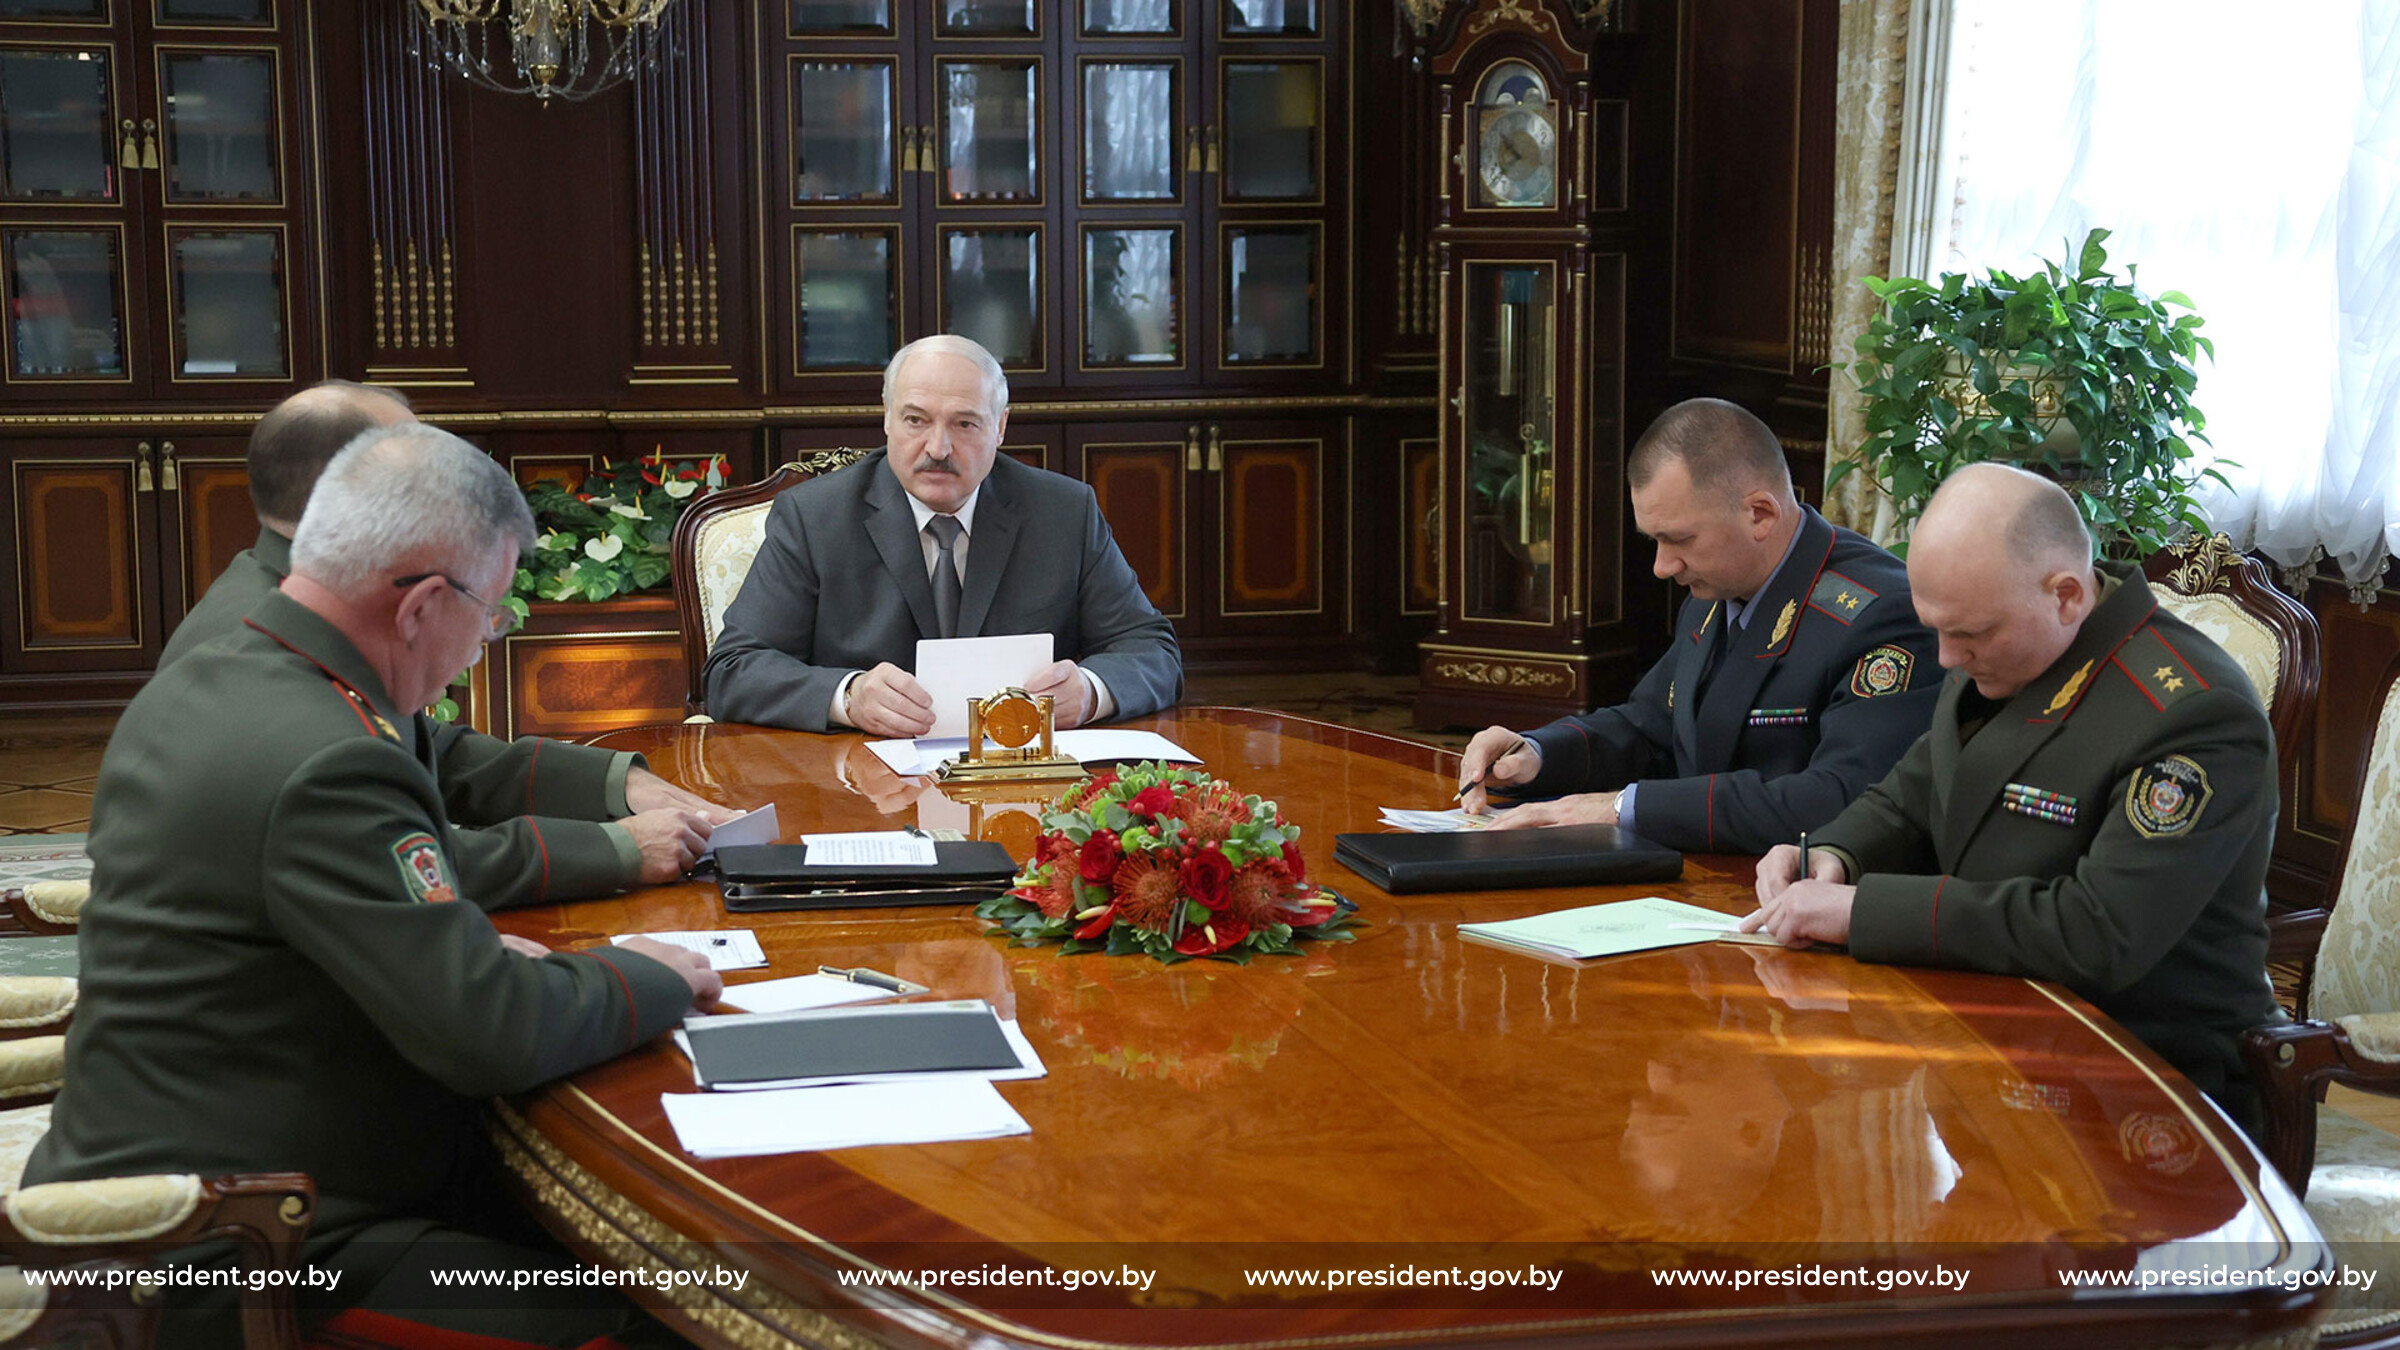 «На наших границах появилась недружественная сила» — политолог Константин Батозский об угрозах Лукашенко в адрес Украины